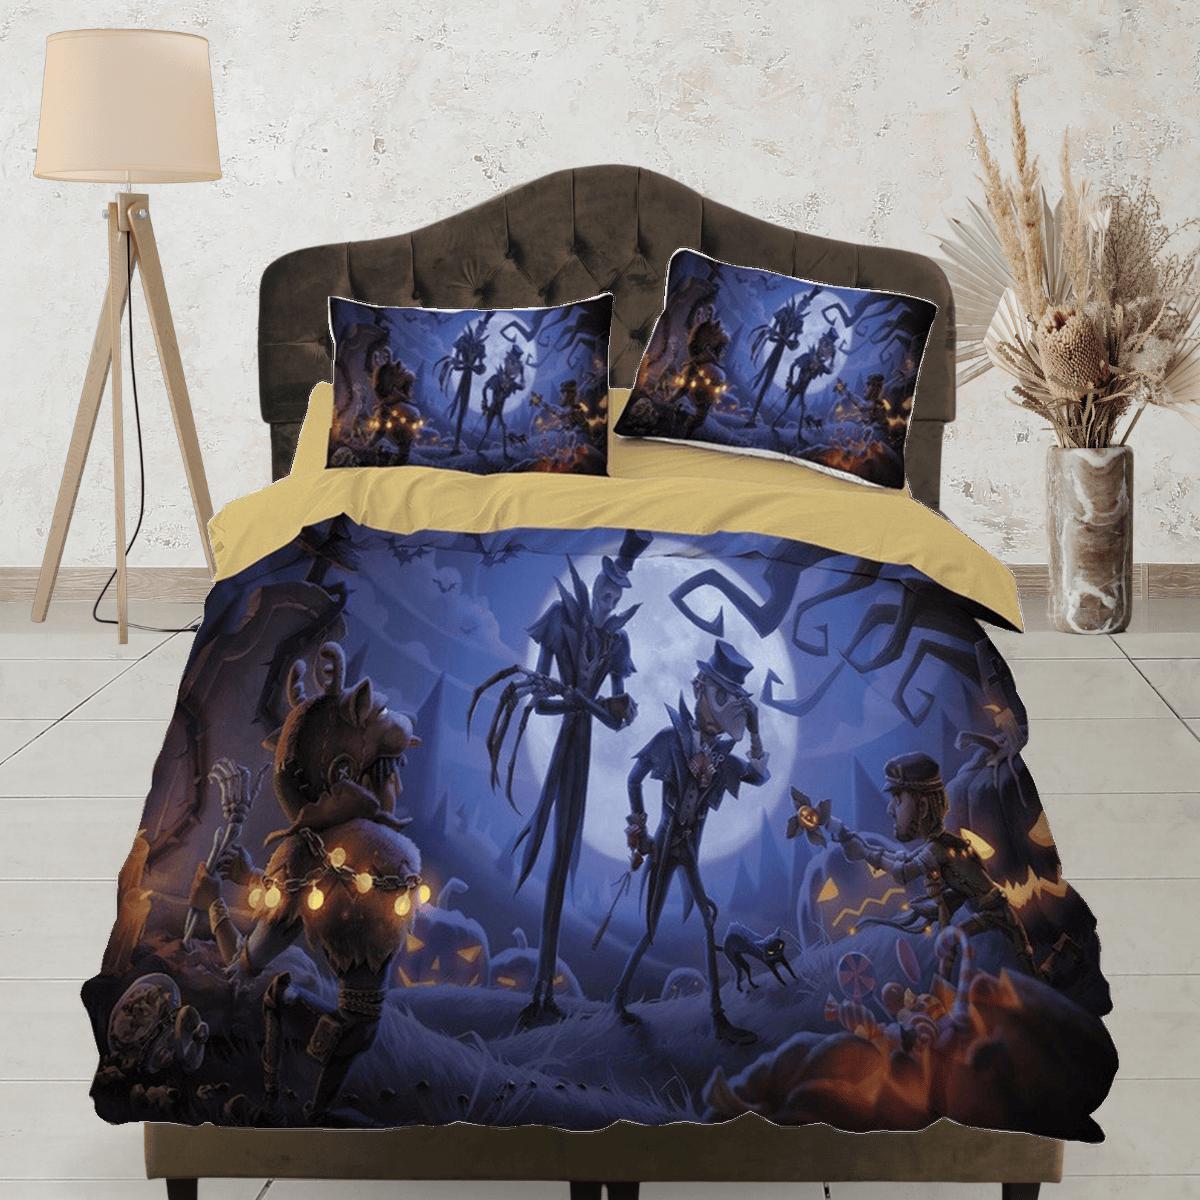 daintyduvet Skeletons pumpkin full moon halloween bedding & pillowcase, gothic duvet cover, dorm bedding, goth decor toddler bedding, halloween gift